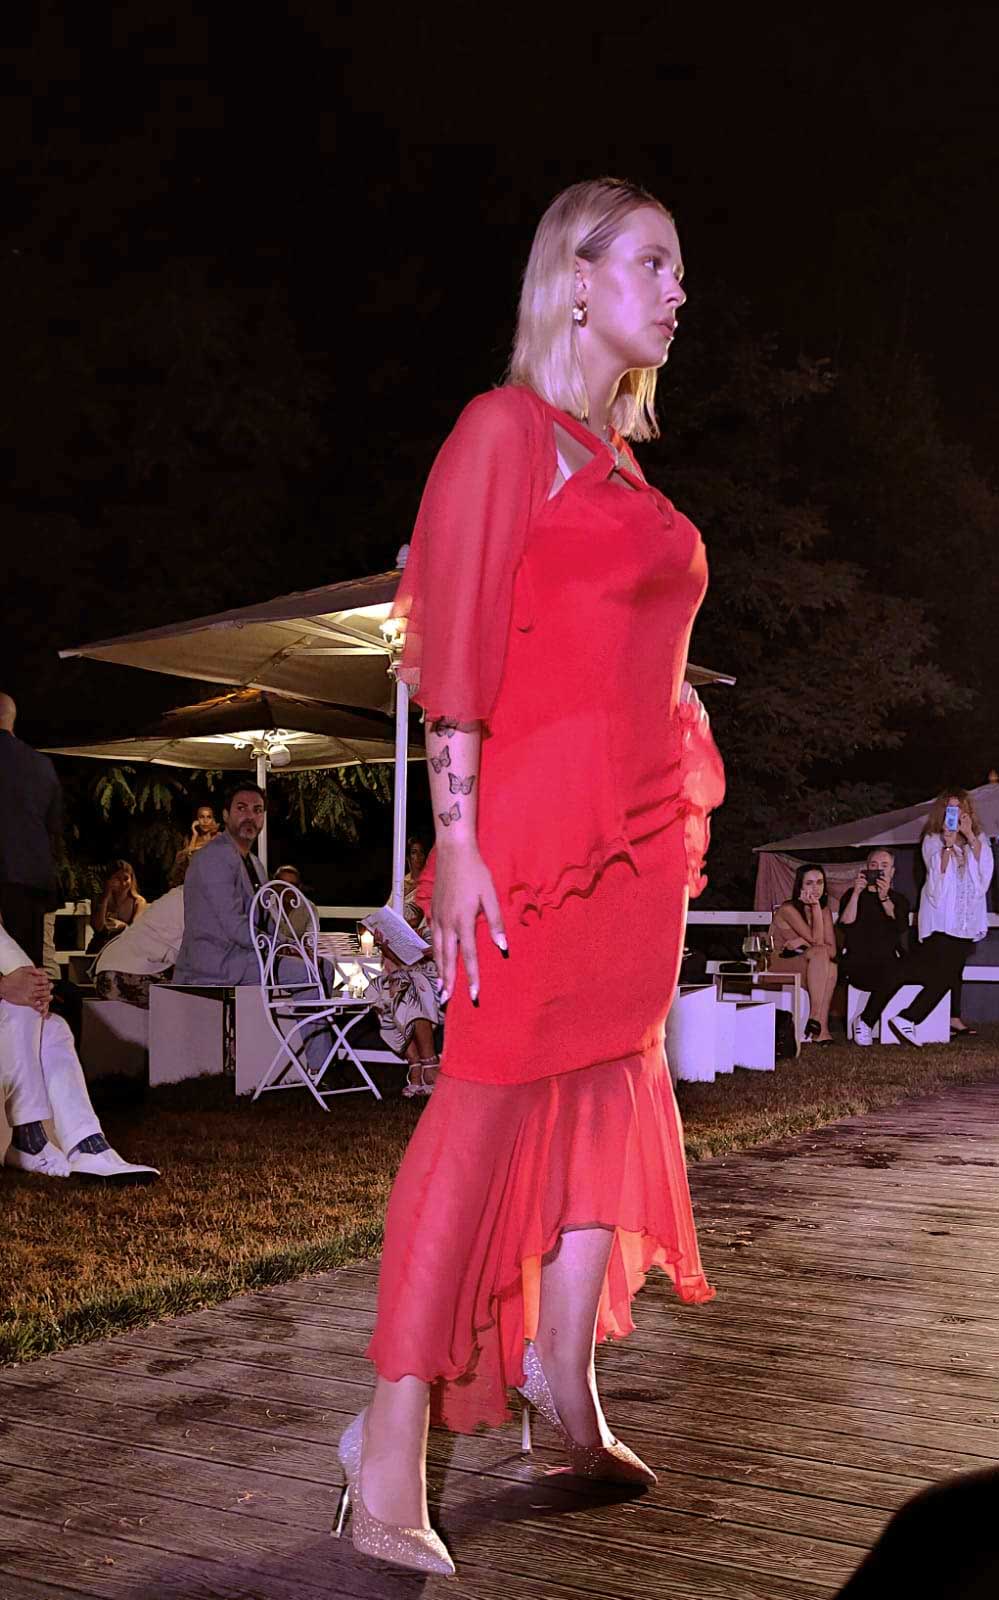 Evento World Top Model Roma da Profumo Sfilata abiti Elins Moda - vestire ragazza di rosso - modella vestiti da cerimonia donna